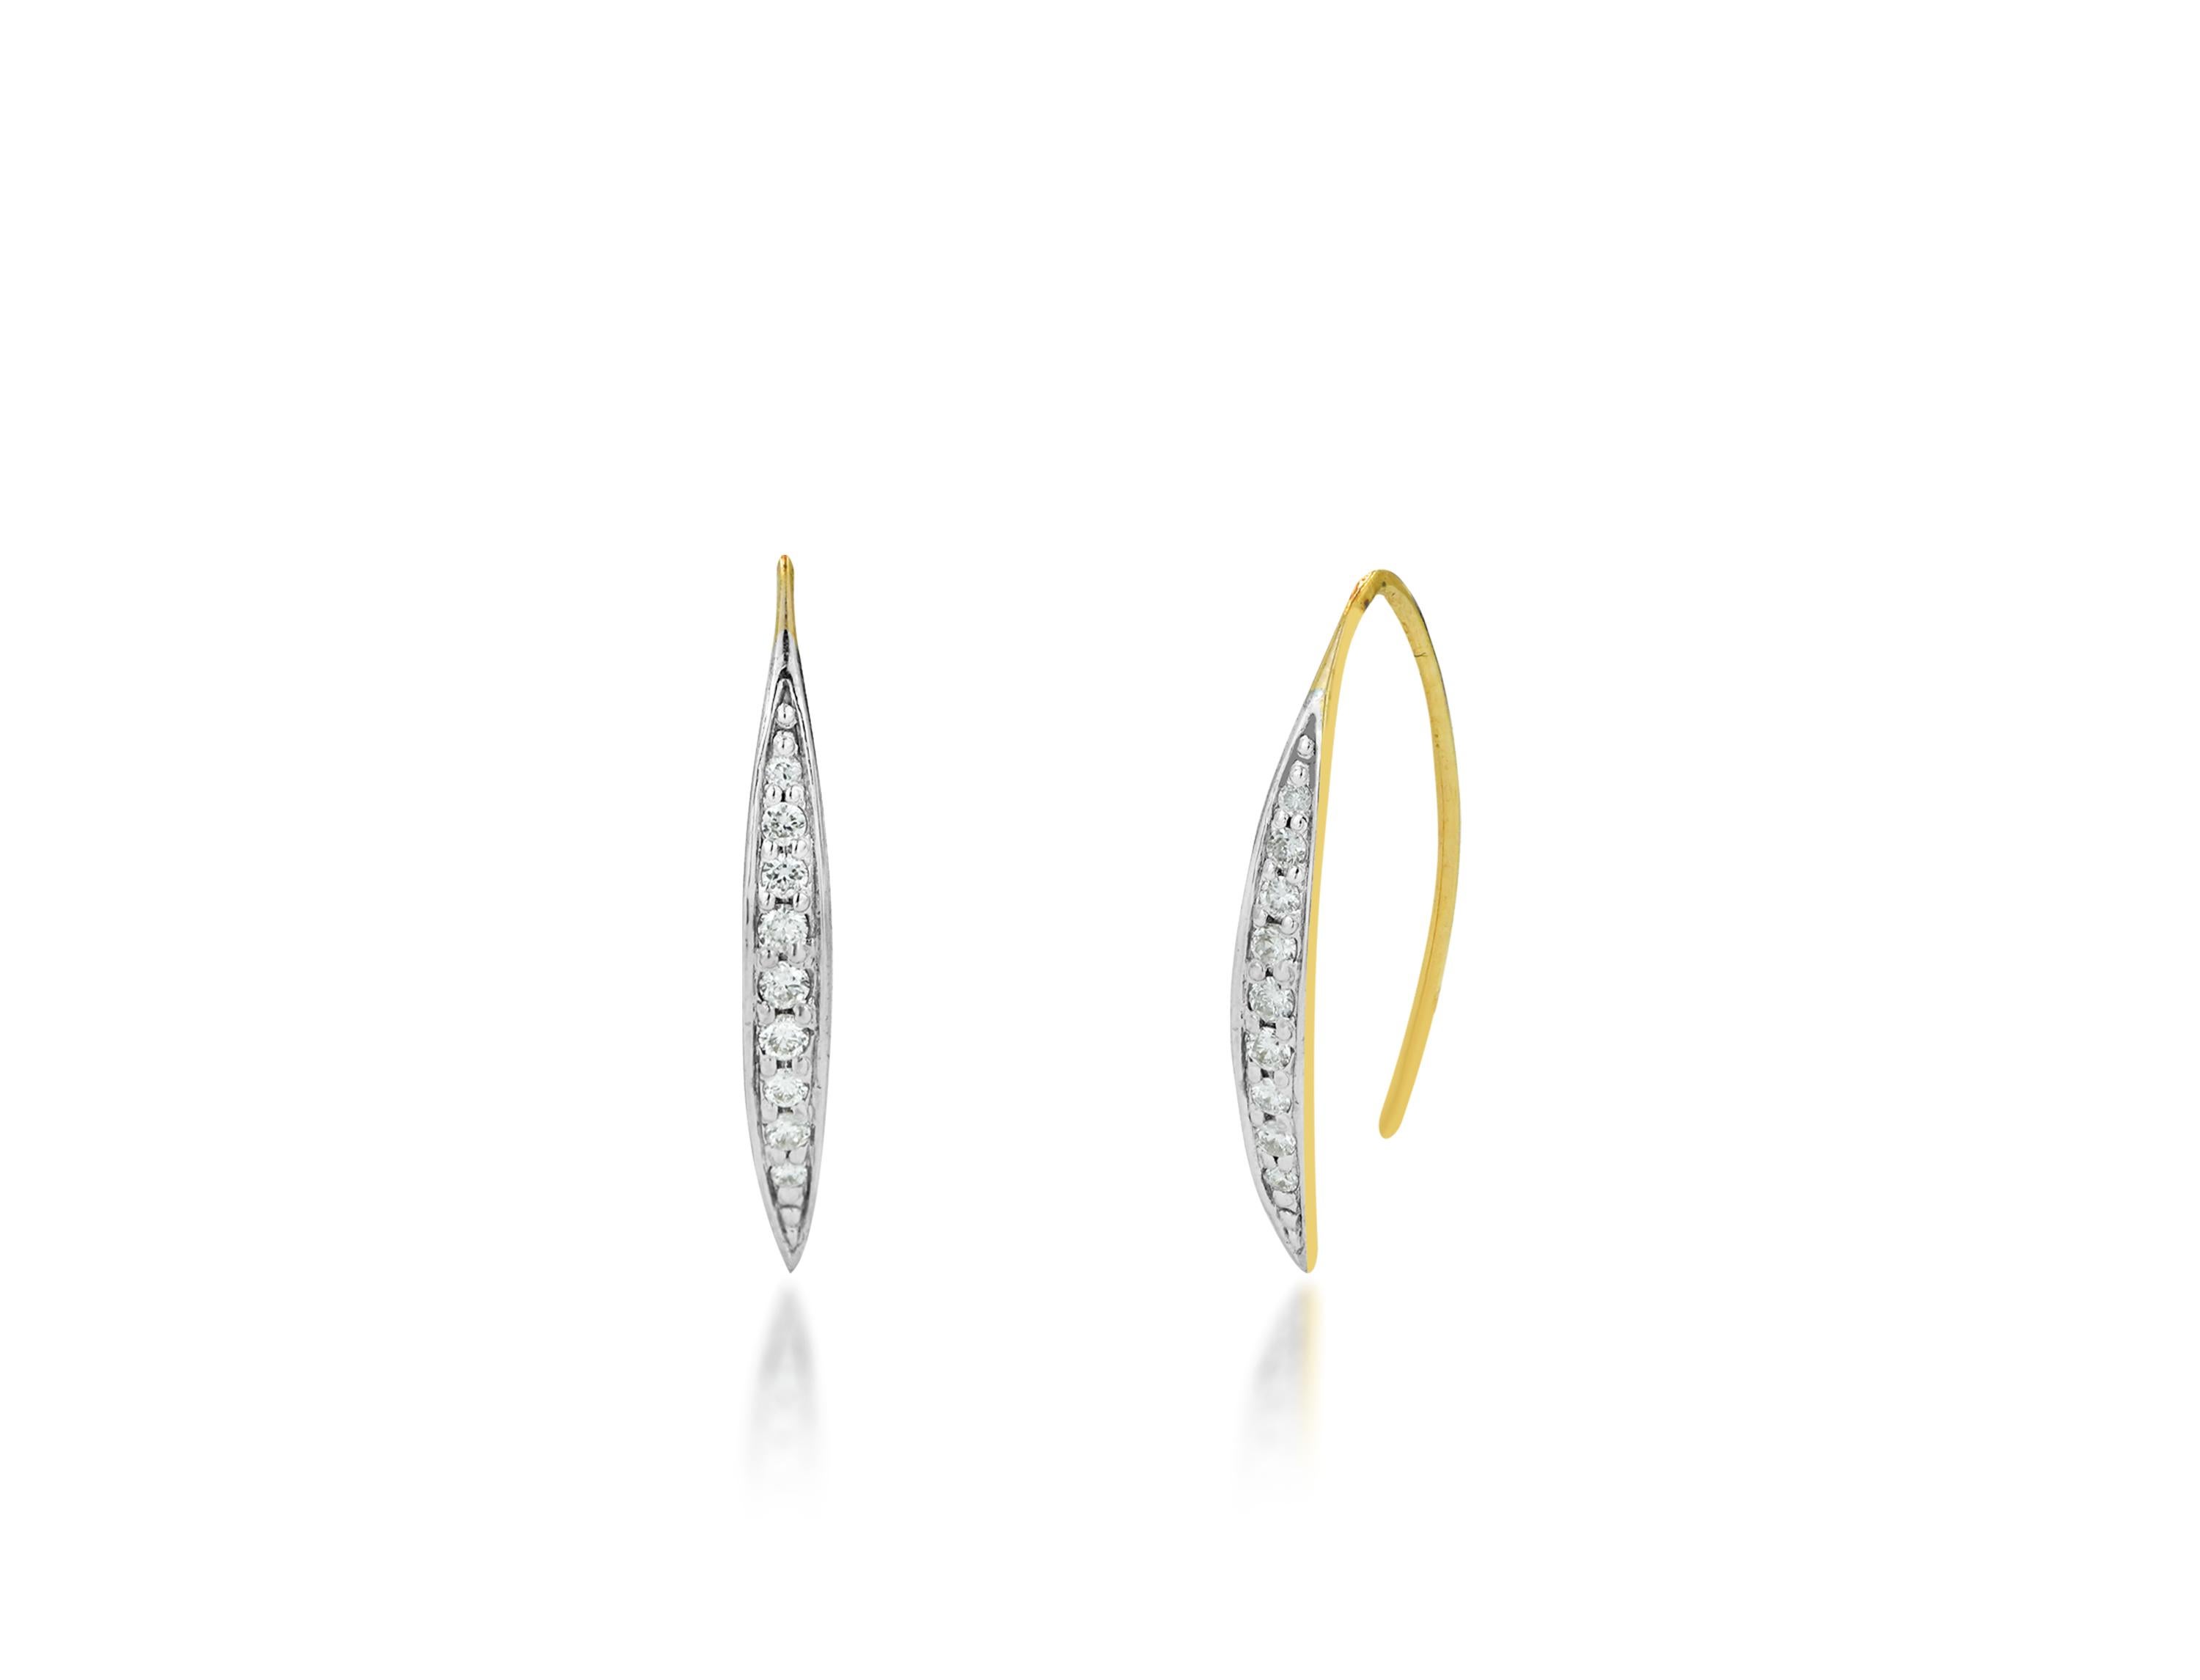 Die Diamant-Ohrringe U Threader sind aus massivem 14-karätigem Gold gefertigt und mit glänzenden, runden Naturdiamanten besetzt.
Erhältlich in drei Goldfarben: Weißgold / Roségold / Gelbgold.

Leichter und wunderschöner echter Diamant im